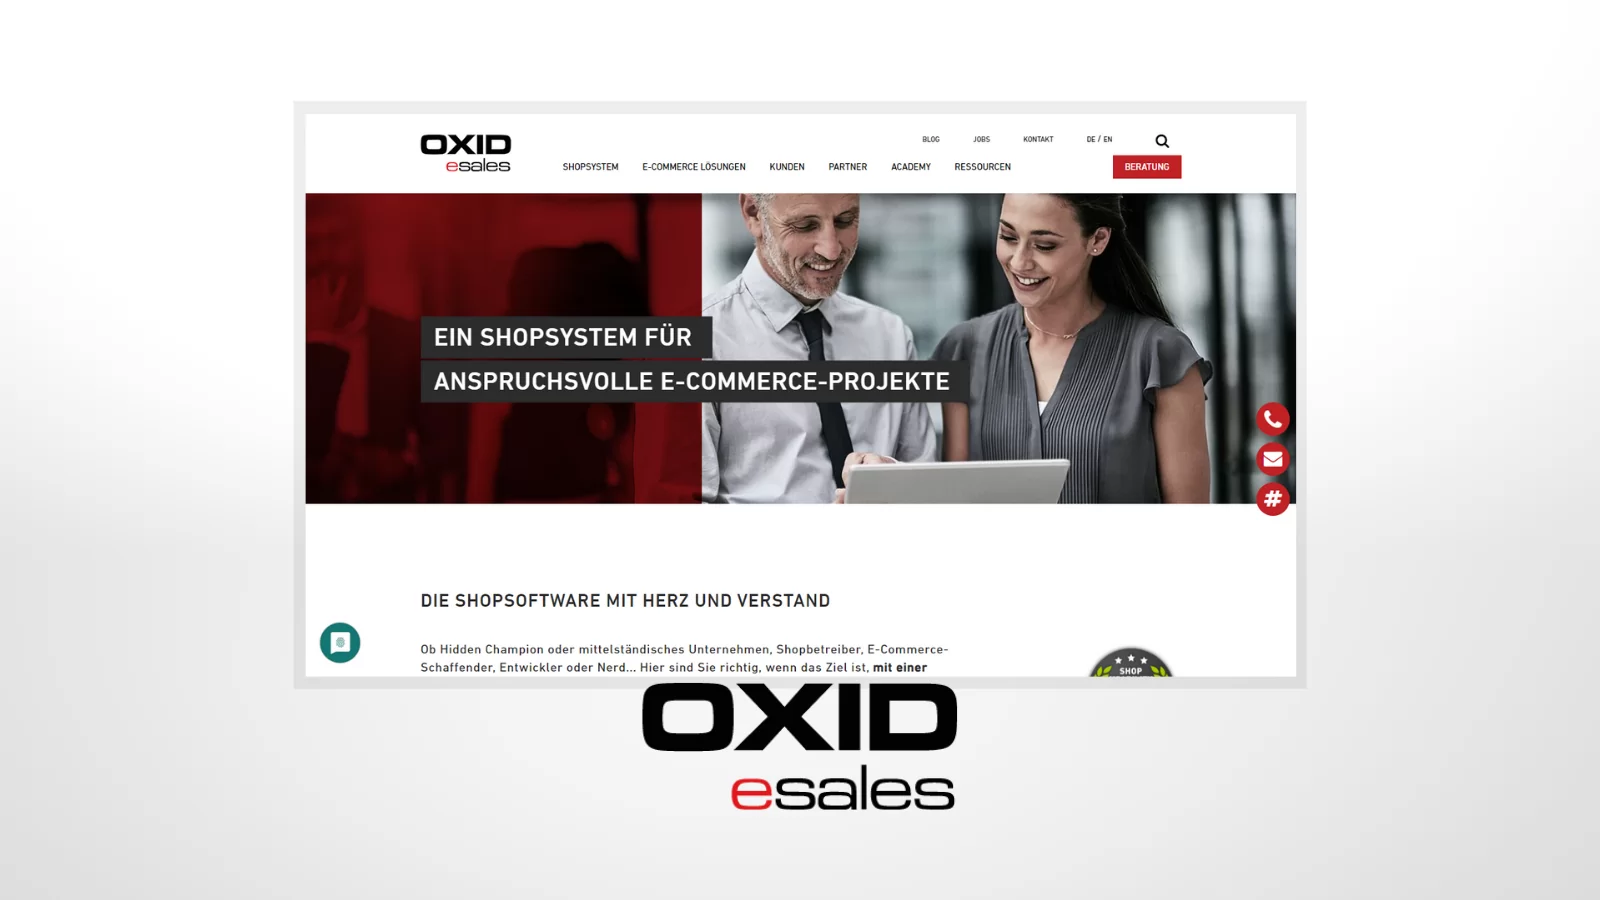 OXID esales als Shopsystem